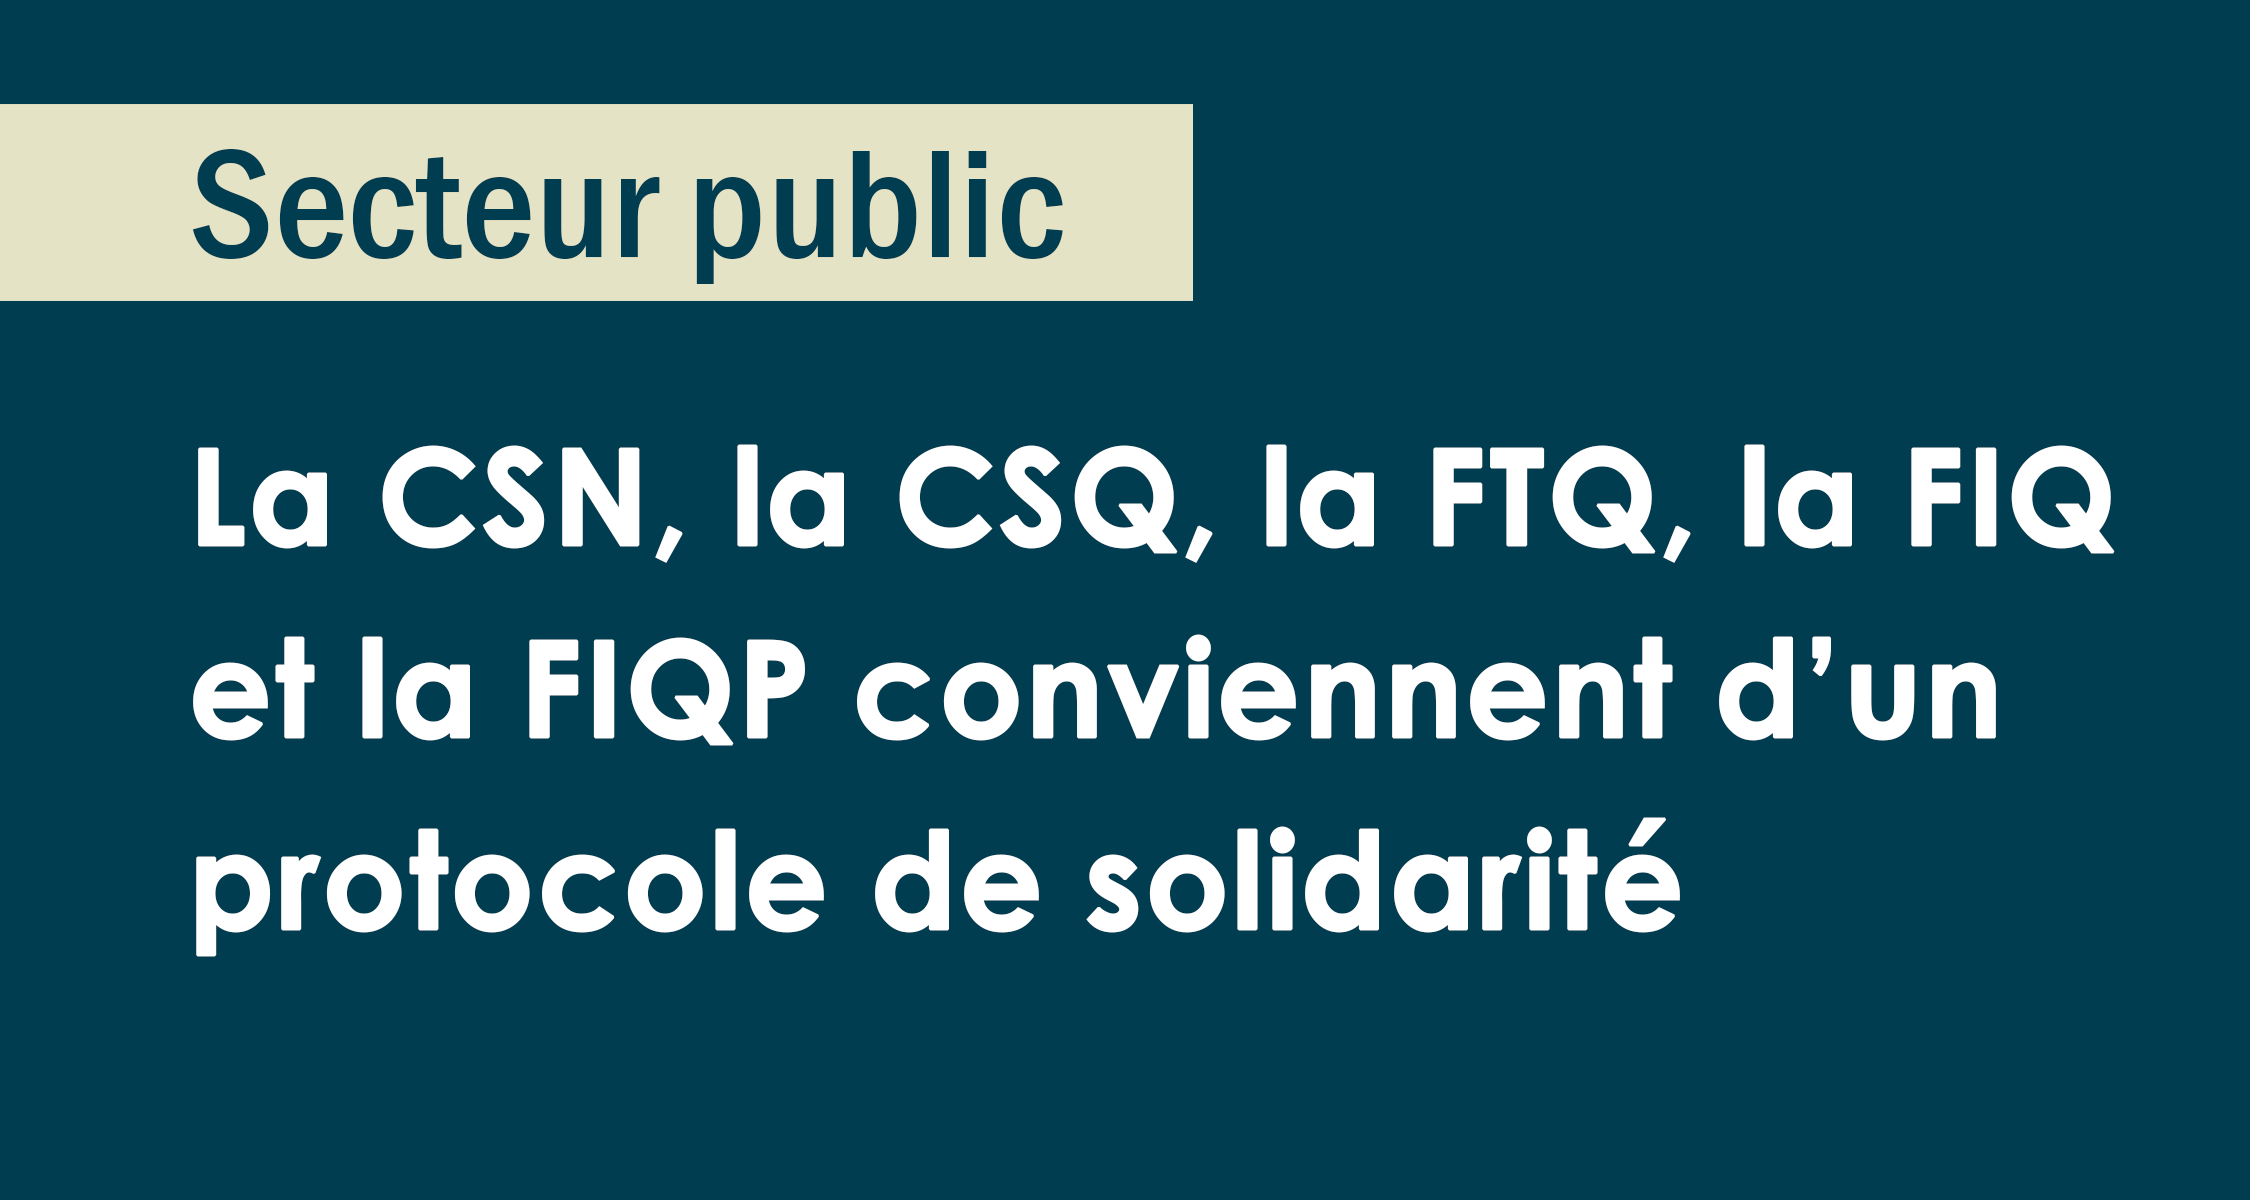 Secteur public : CSN, CSQ, FTQ, FIQ et FIQP conviennent d’un protocole de solidarité